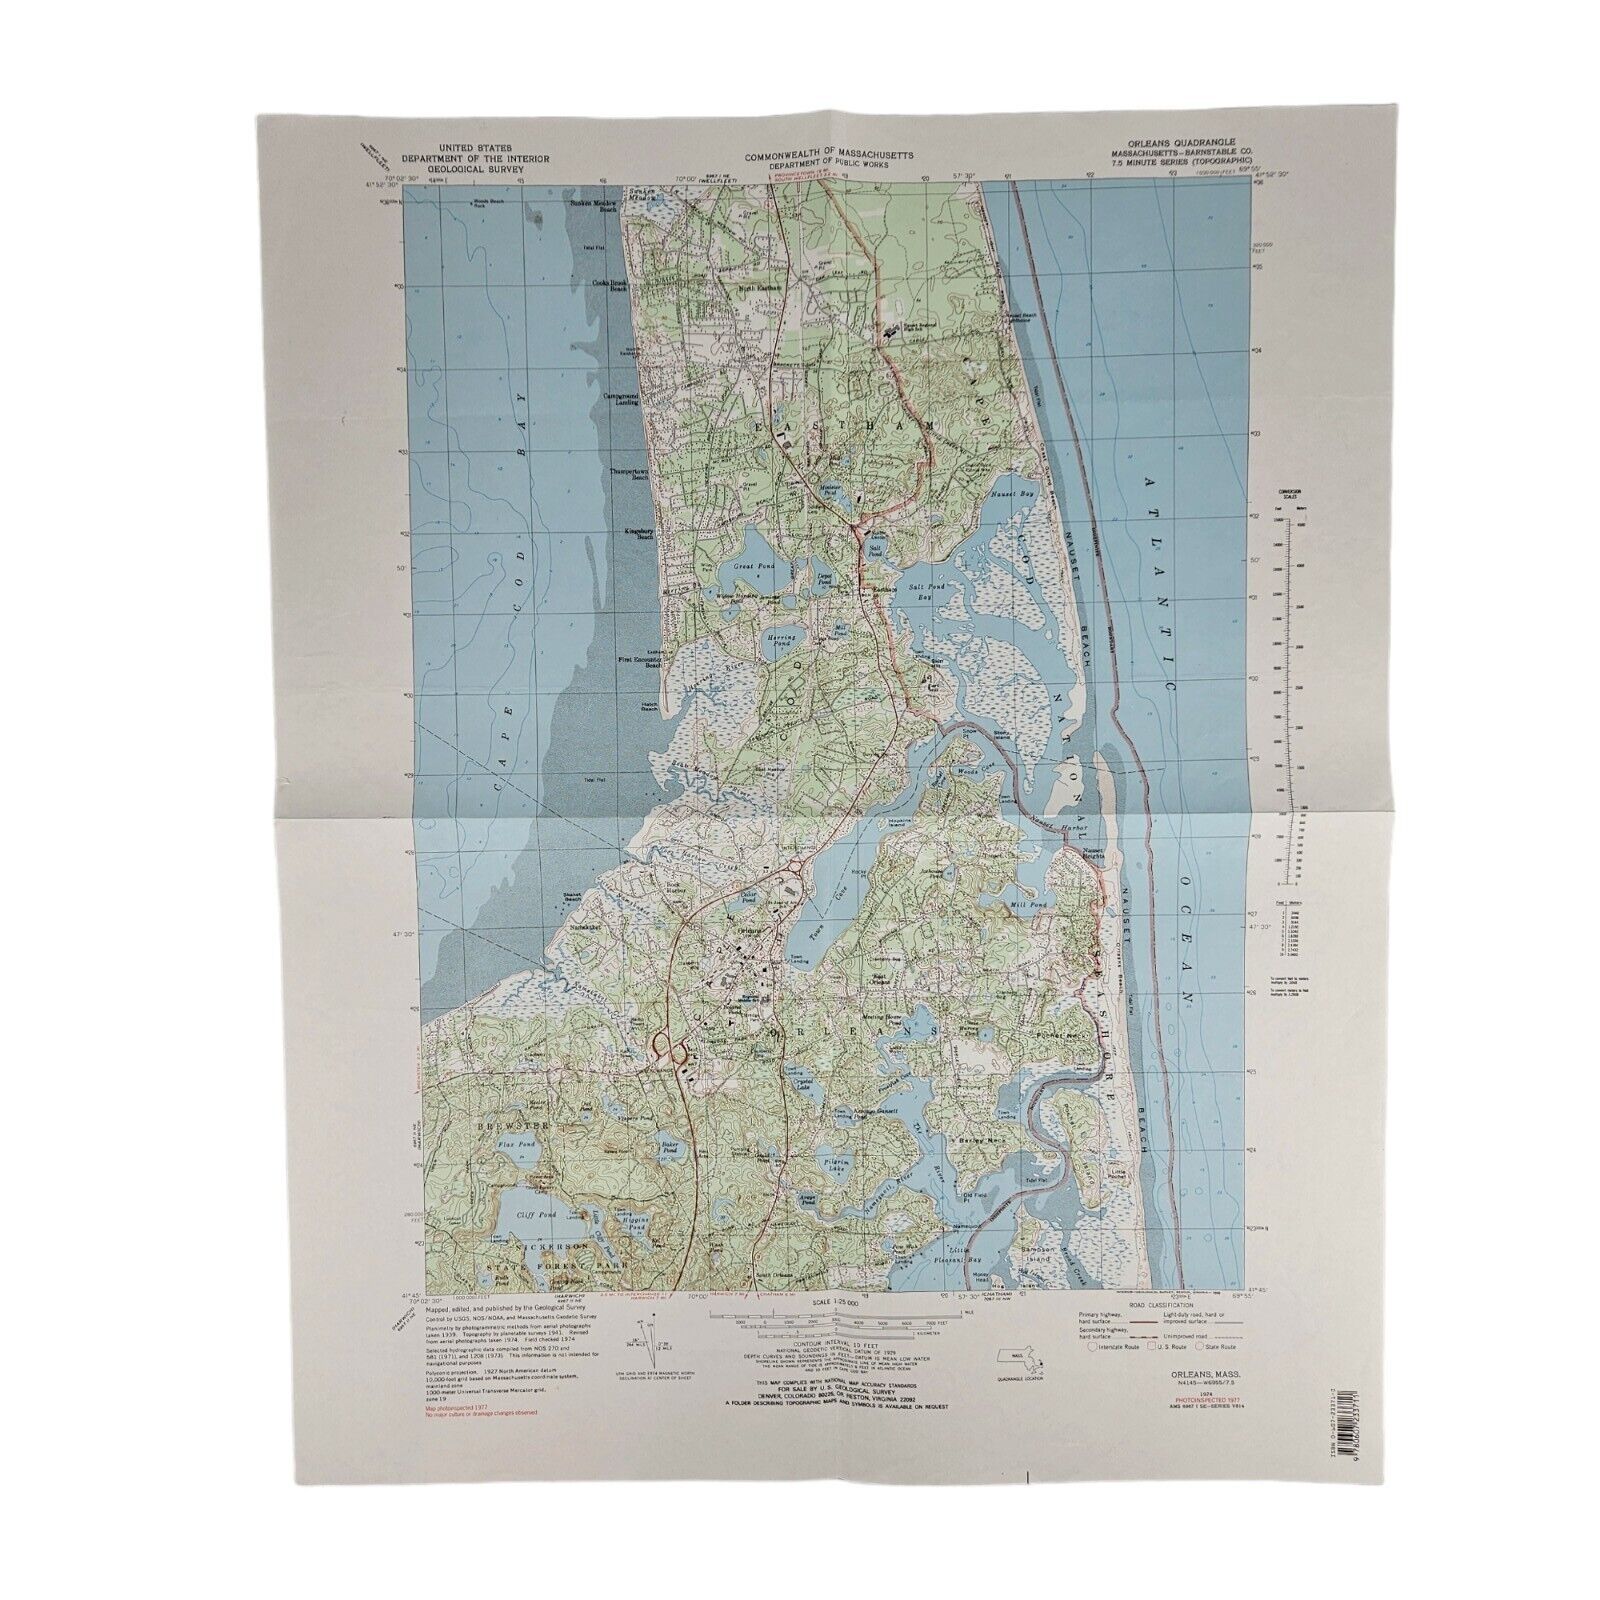 Orleans Quadrangle Massachusetts Topographic Geological Survey Map Vtg. 1974